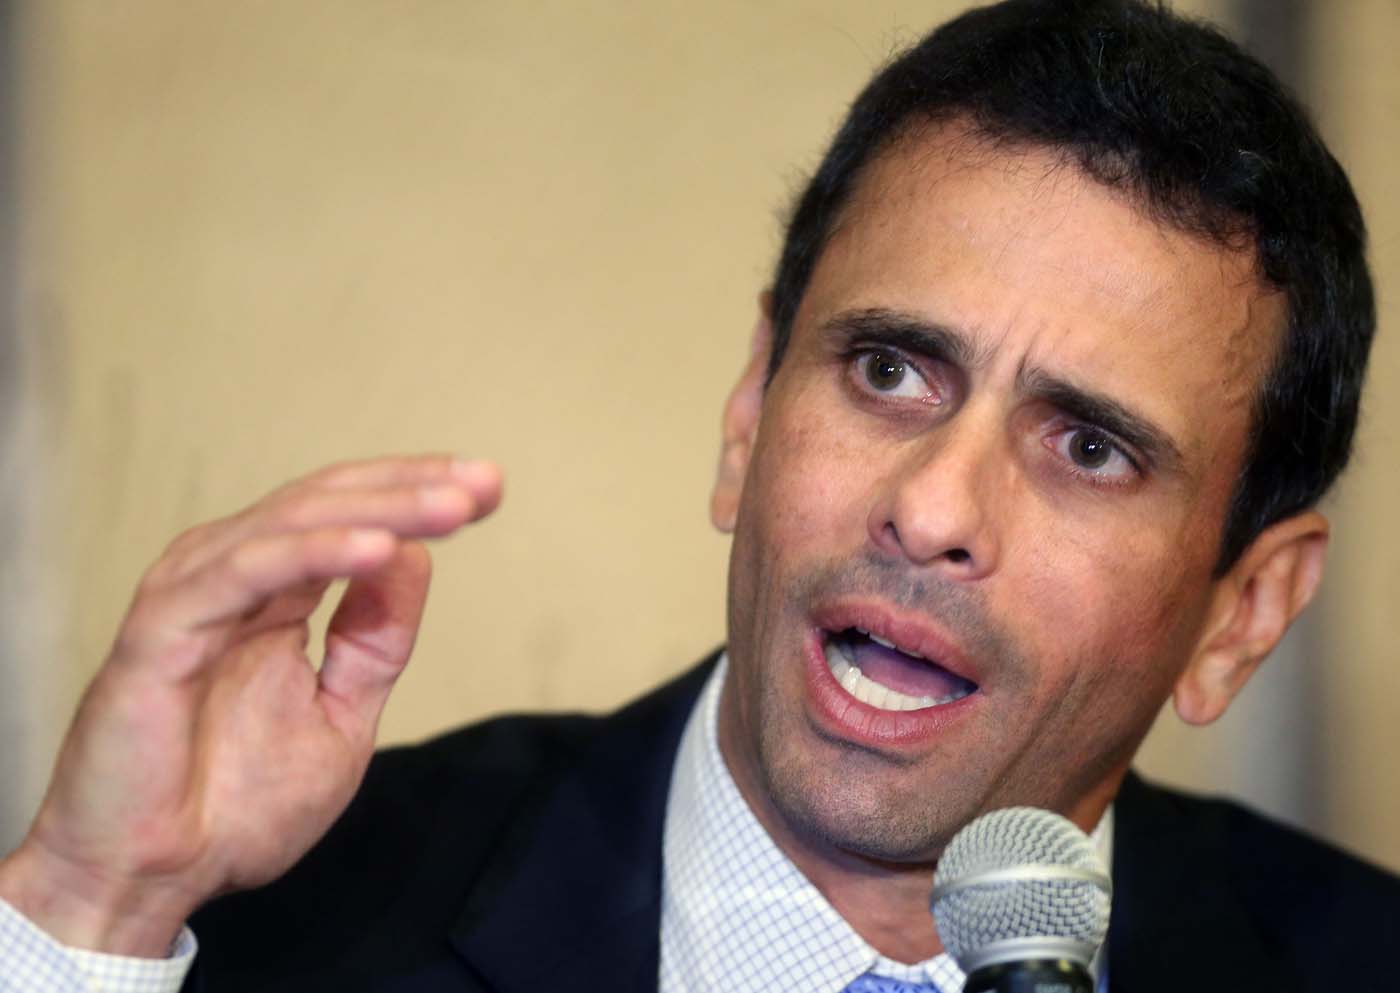 Contraloría abre investigación contra Capriles por “irregularidades” en su gestión